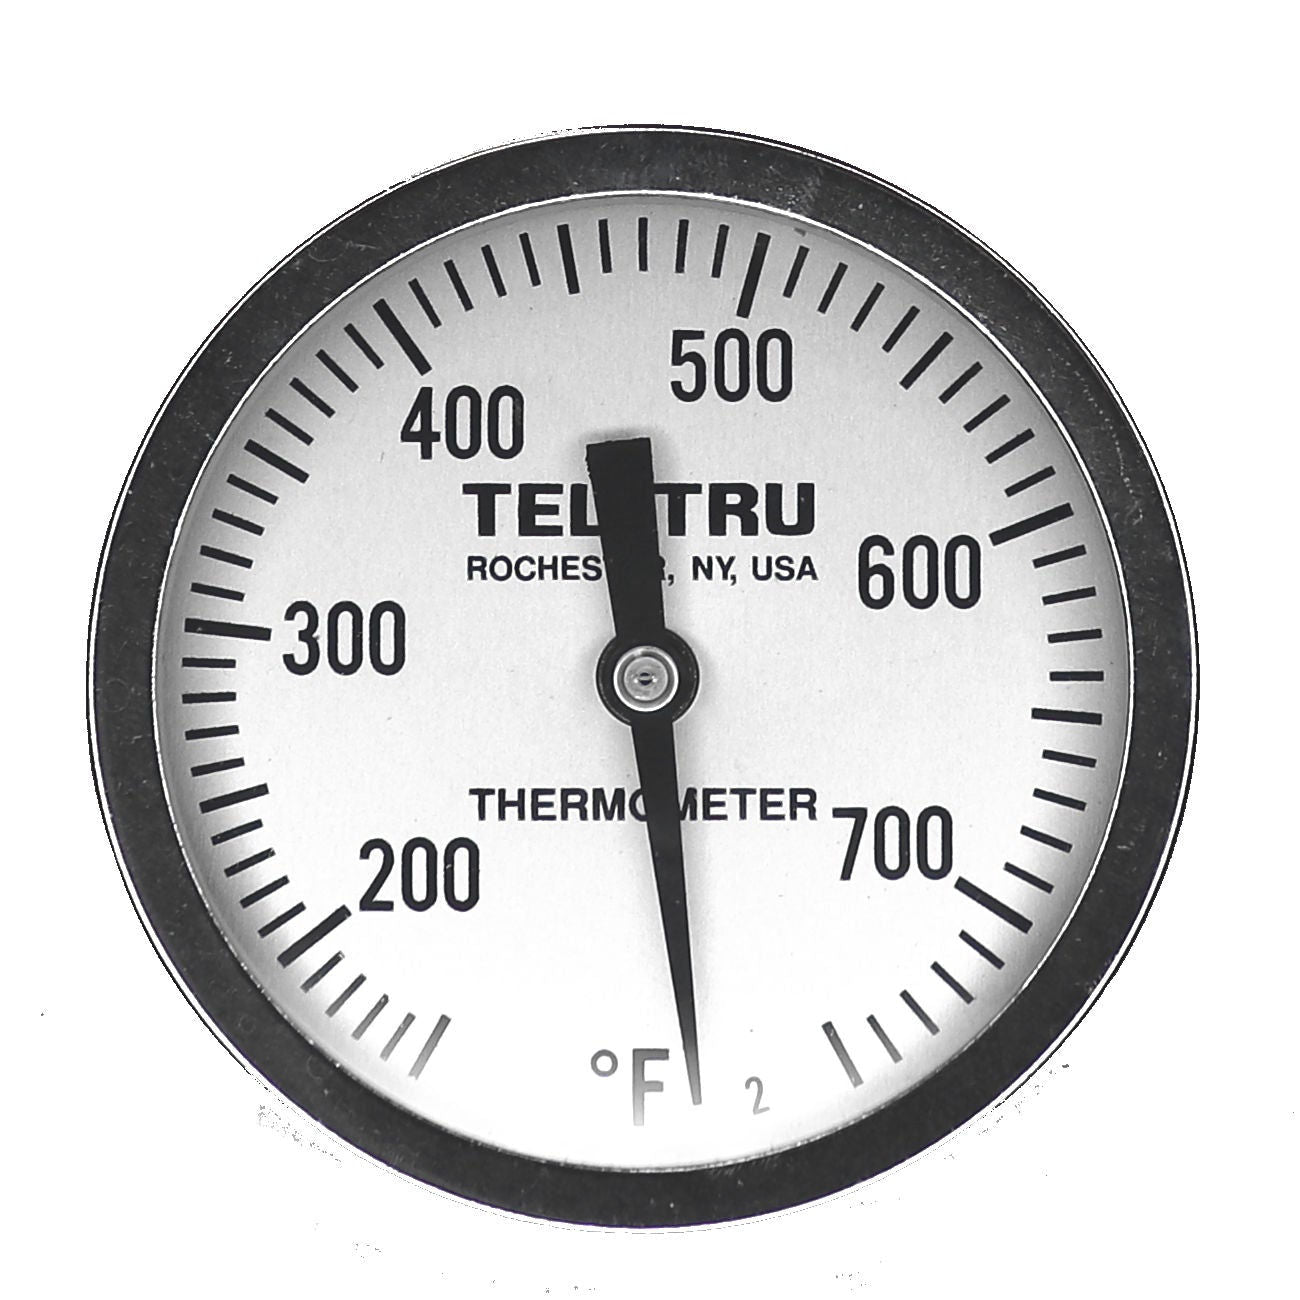 Tel-Tru UT300 BBQ Grill & Smoker Thermometer 3 Dial 2.5 Stem 50-550 – BBQ  Bonanza